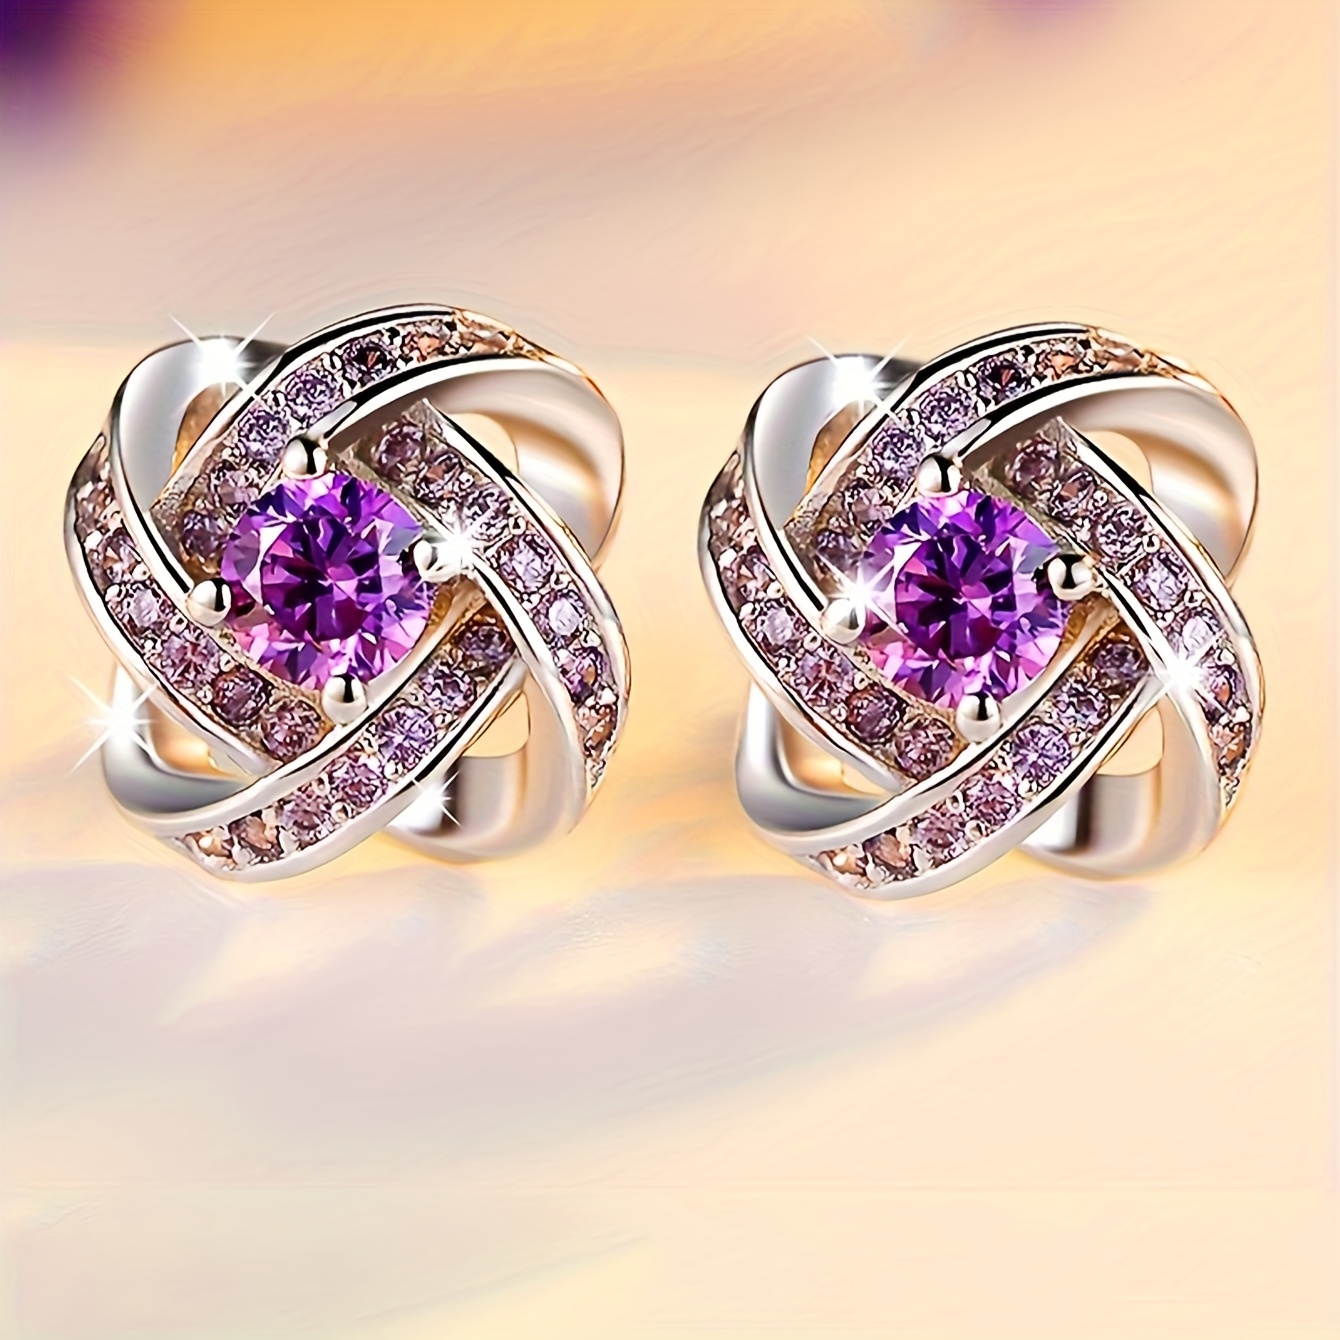 

Delicate Purple Flower Shaped Stud Earrings Zinc Alloy Jewelry Vintage Elegant Style For Women Daily Dating Earrings